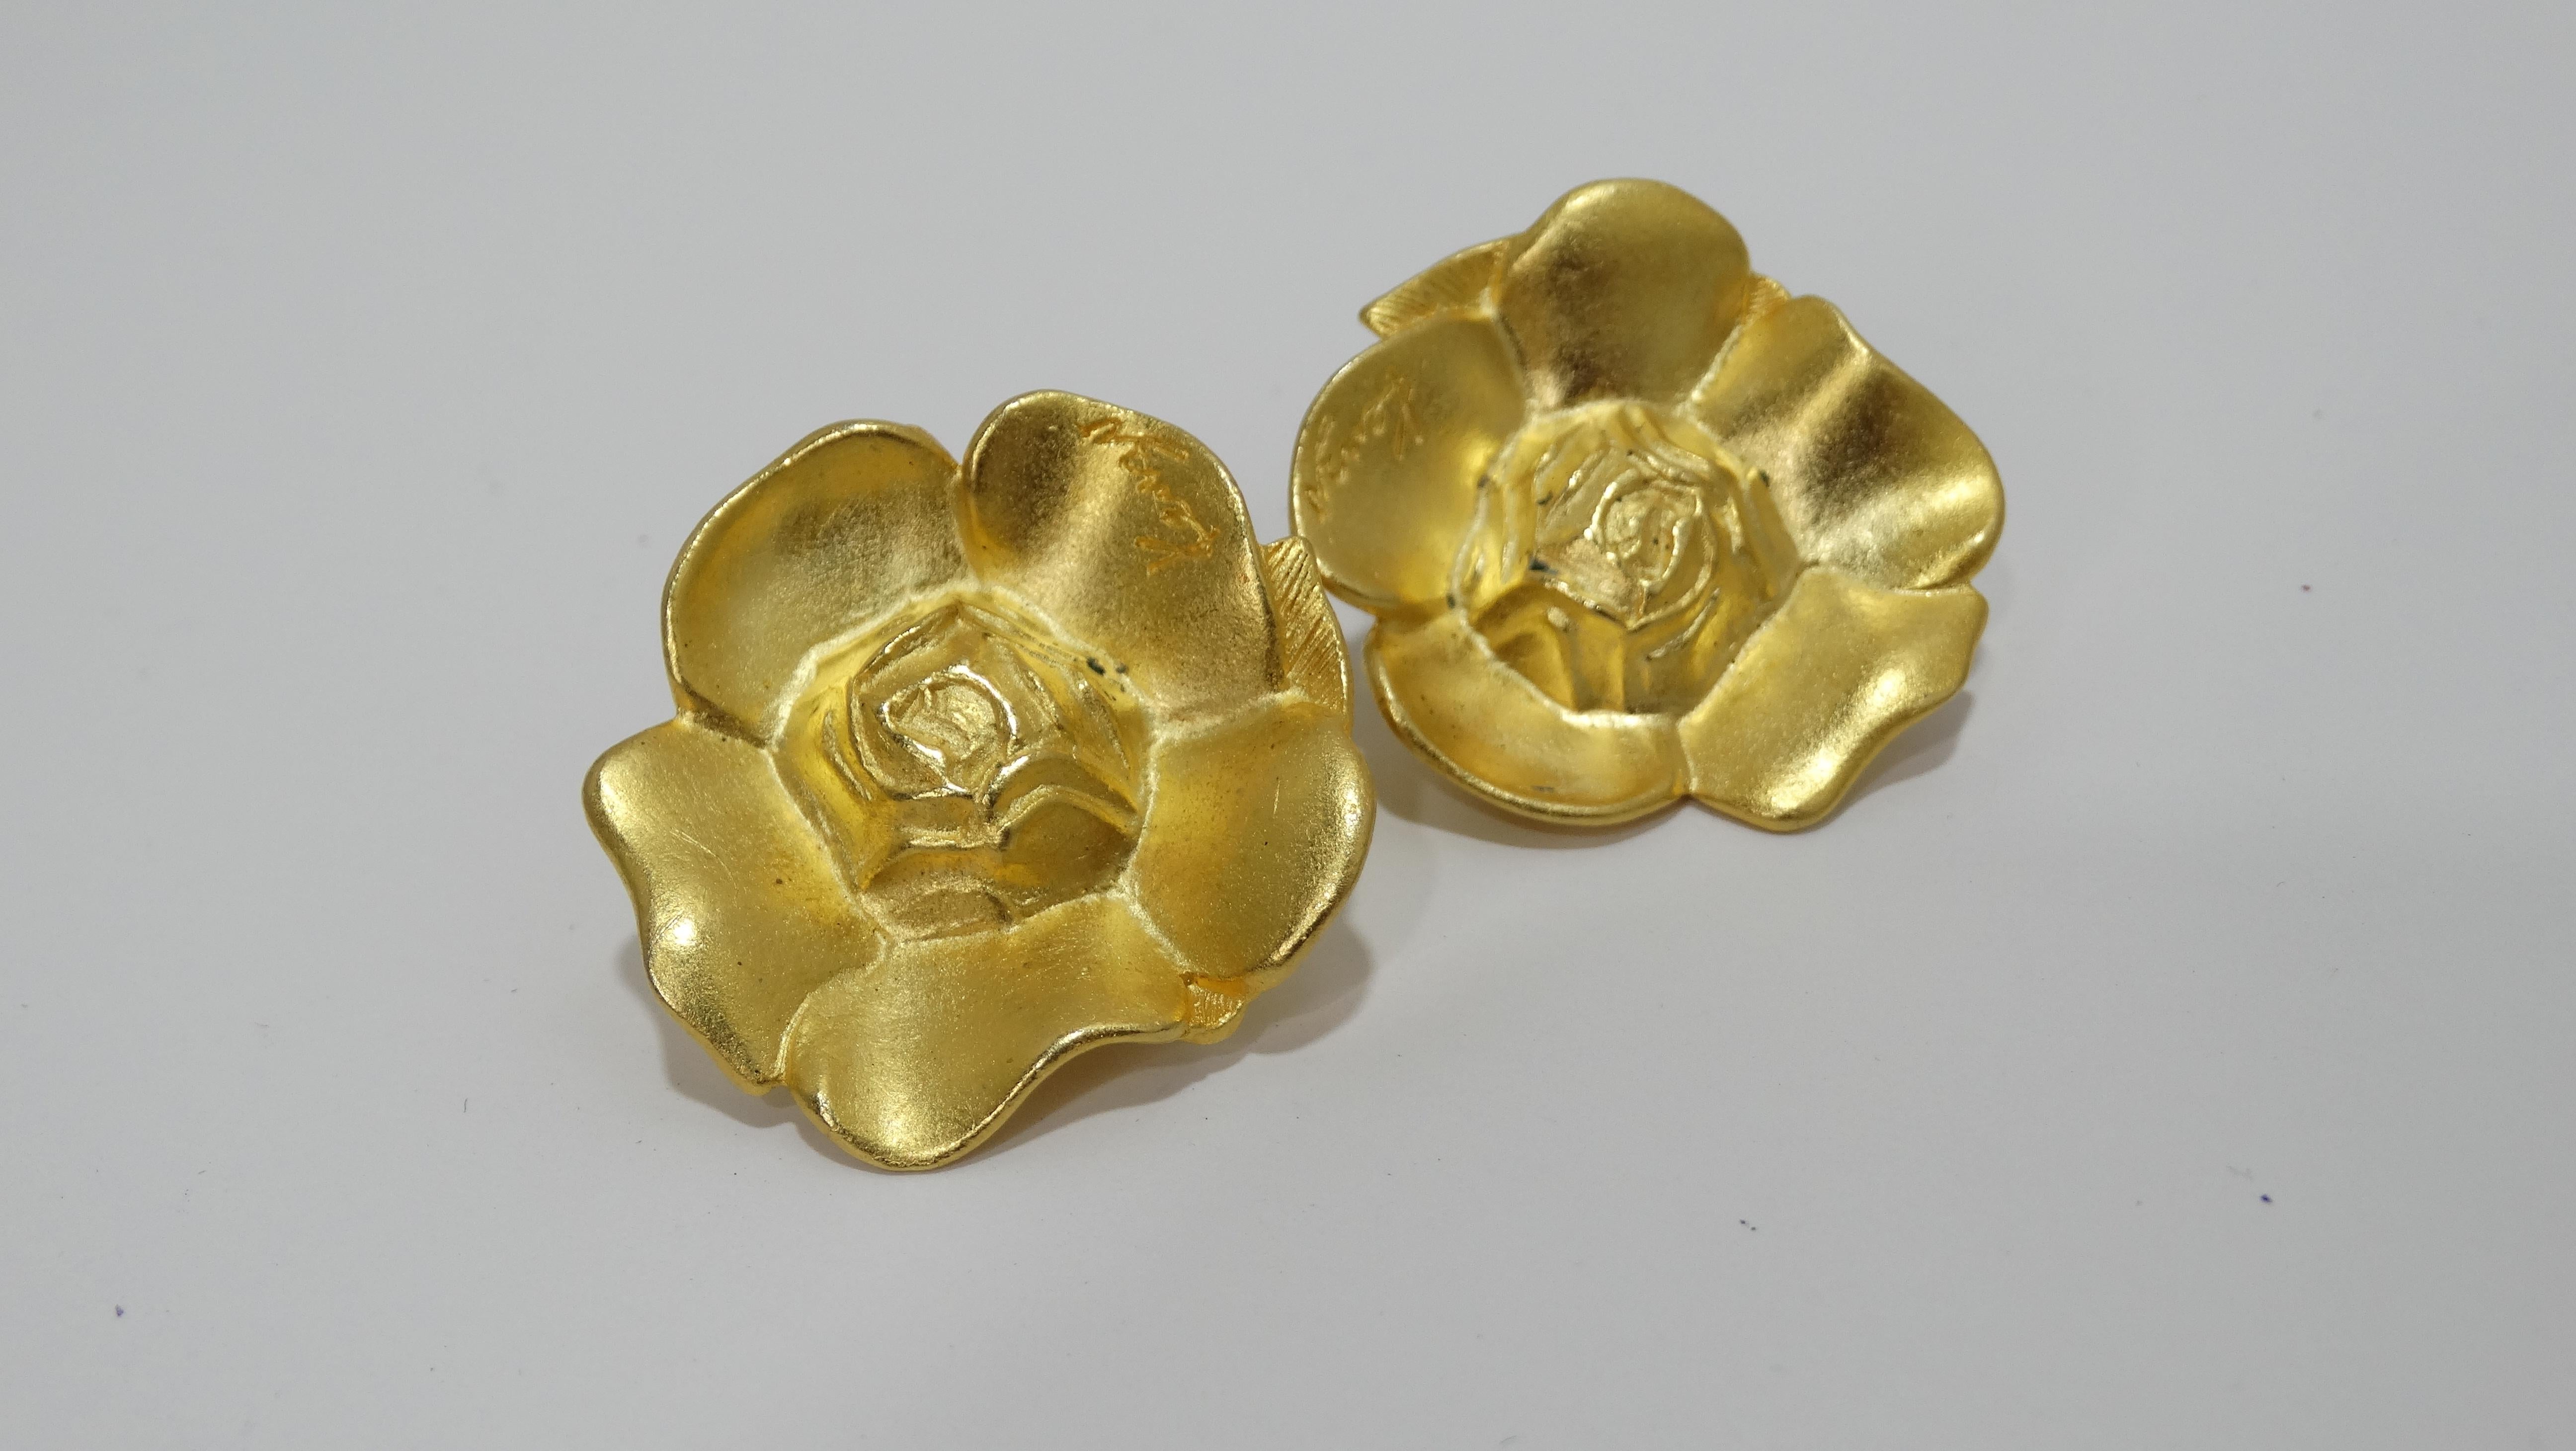 Sichern Sie sich seltenen Vintage-Schmuck von Kenzo! Diese floralen Vintage-Ohrringe von Kenzo aus den 1990er Jahren, die in Paris hergestellt wurden, bestechen durch ihre satten Goldtöne. Das Design besteht aus einem detaillierten, floralen Guss,